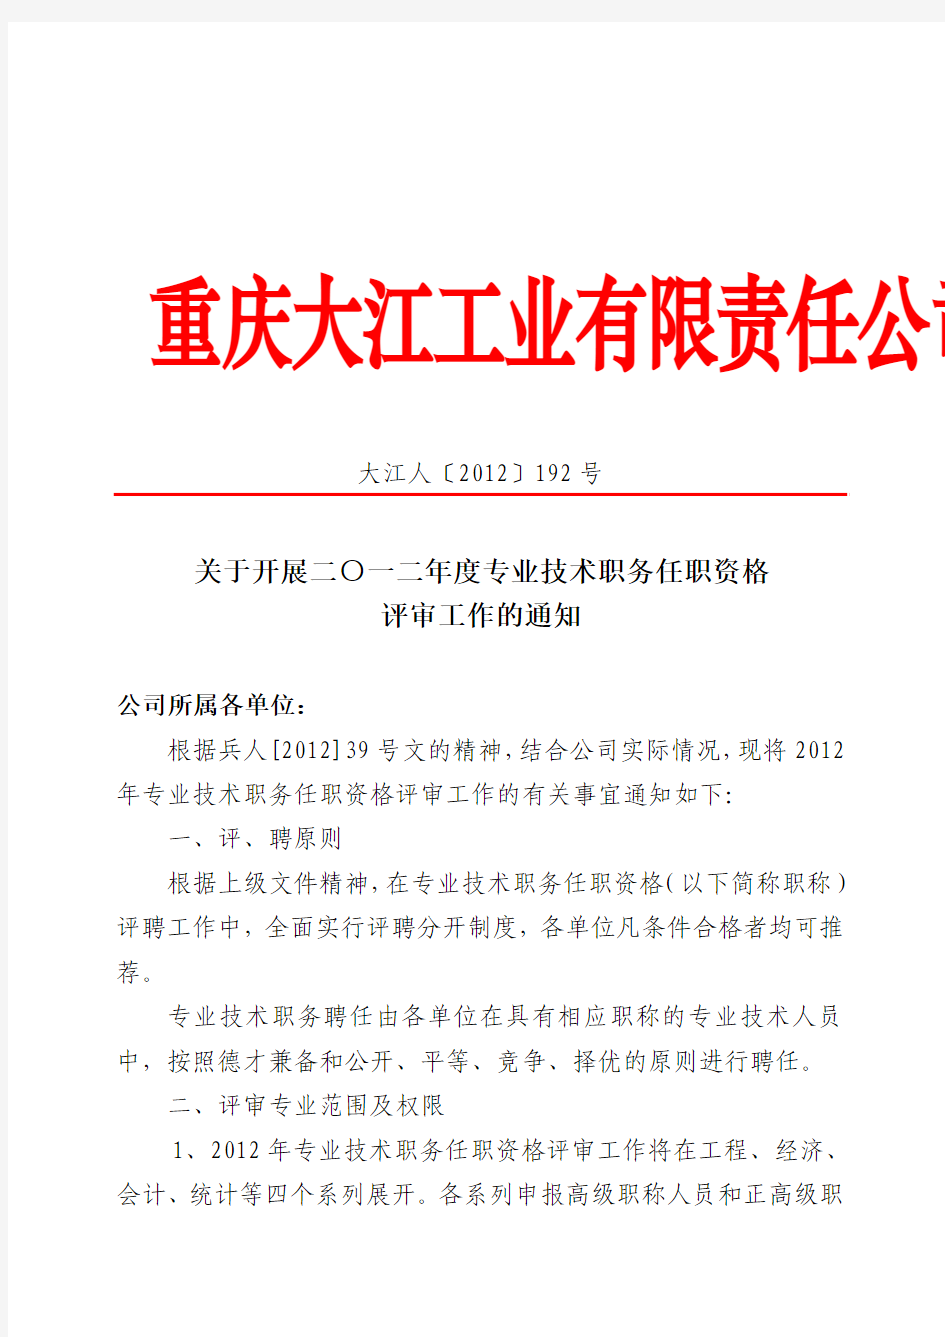 大江人(2012)192号  关于开展二O一二年度专业技术职务任职资格评审工作的通知